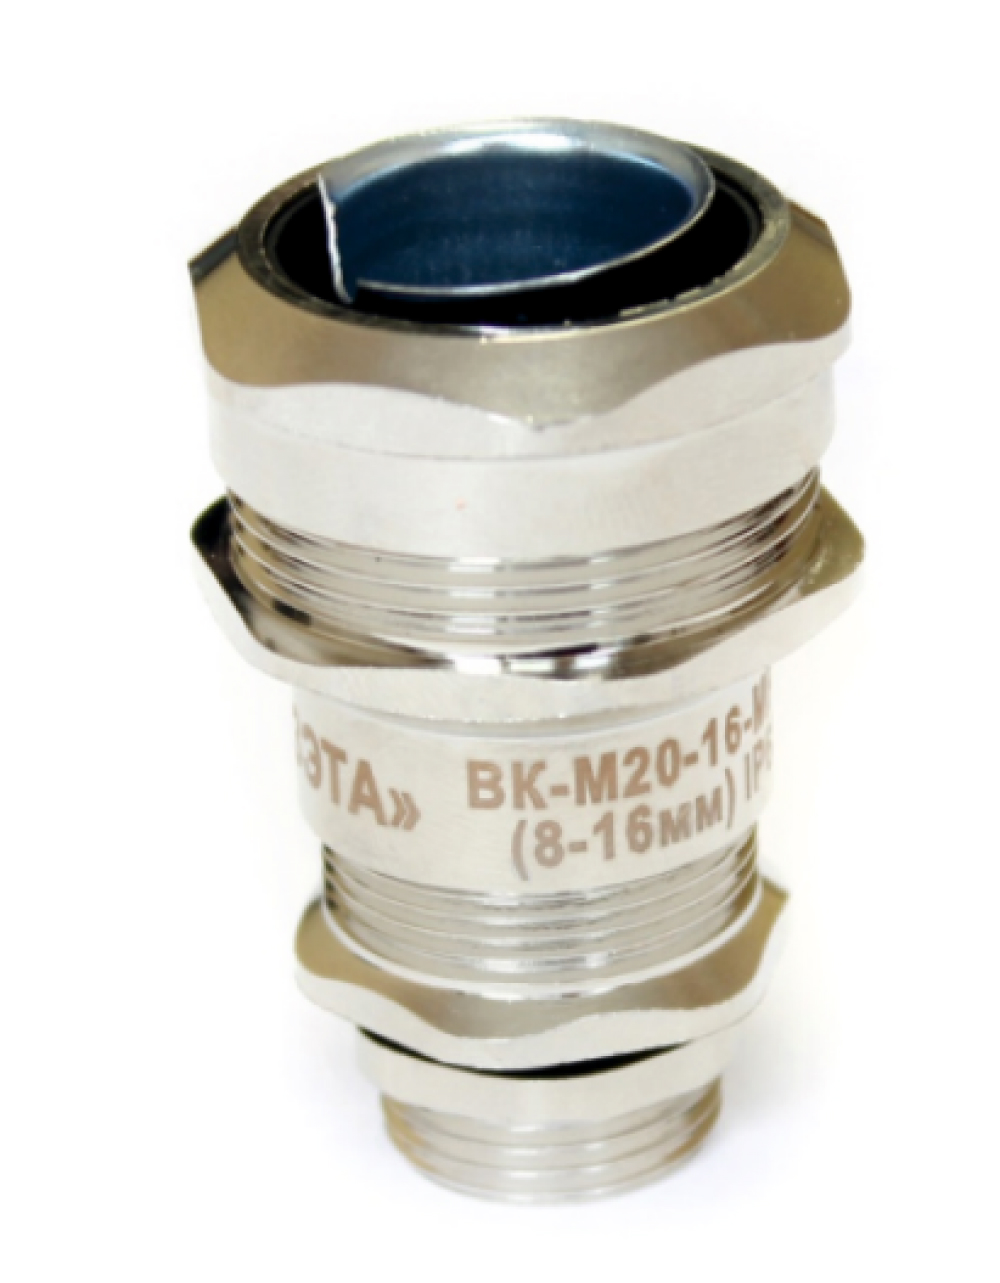 Ввод кабельный Гофроматик ВК-М-МР кабель 8-16 мм, резьба М25, корпус - латунь, уплотнение - диафрагма